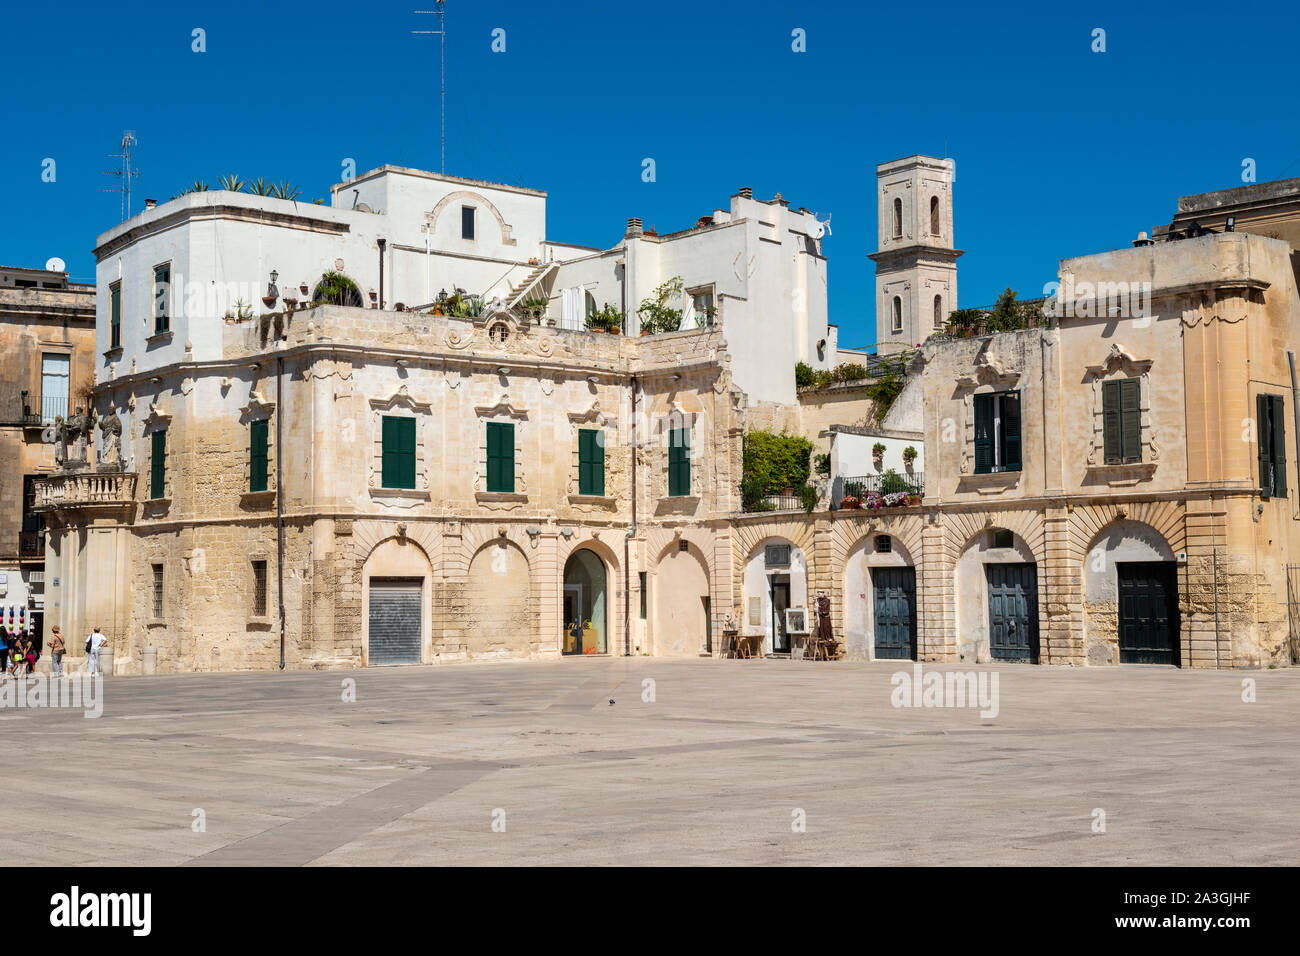 Building on Piazza del Duomo in Lecce, Apulia (Puglia) Southern Italy Stock Photo